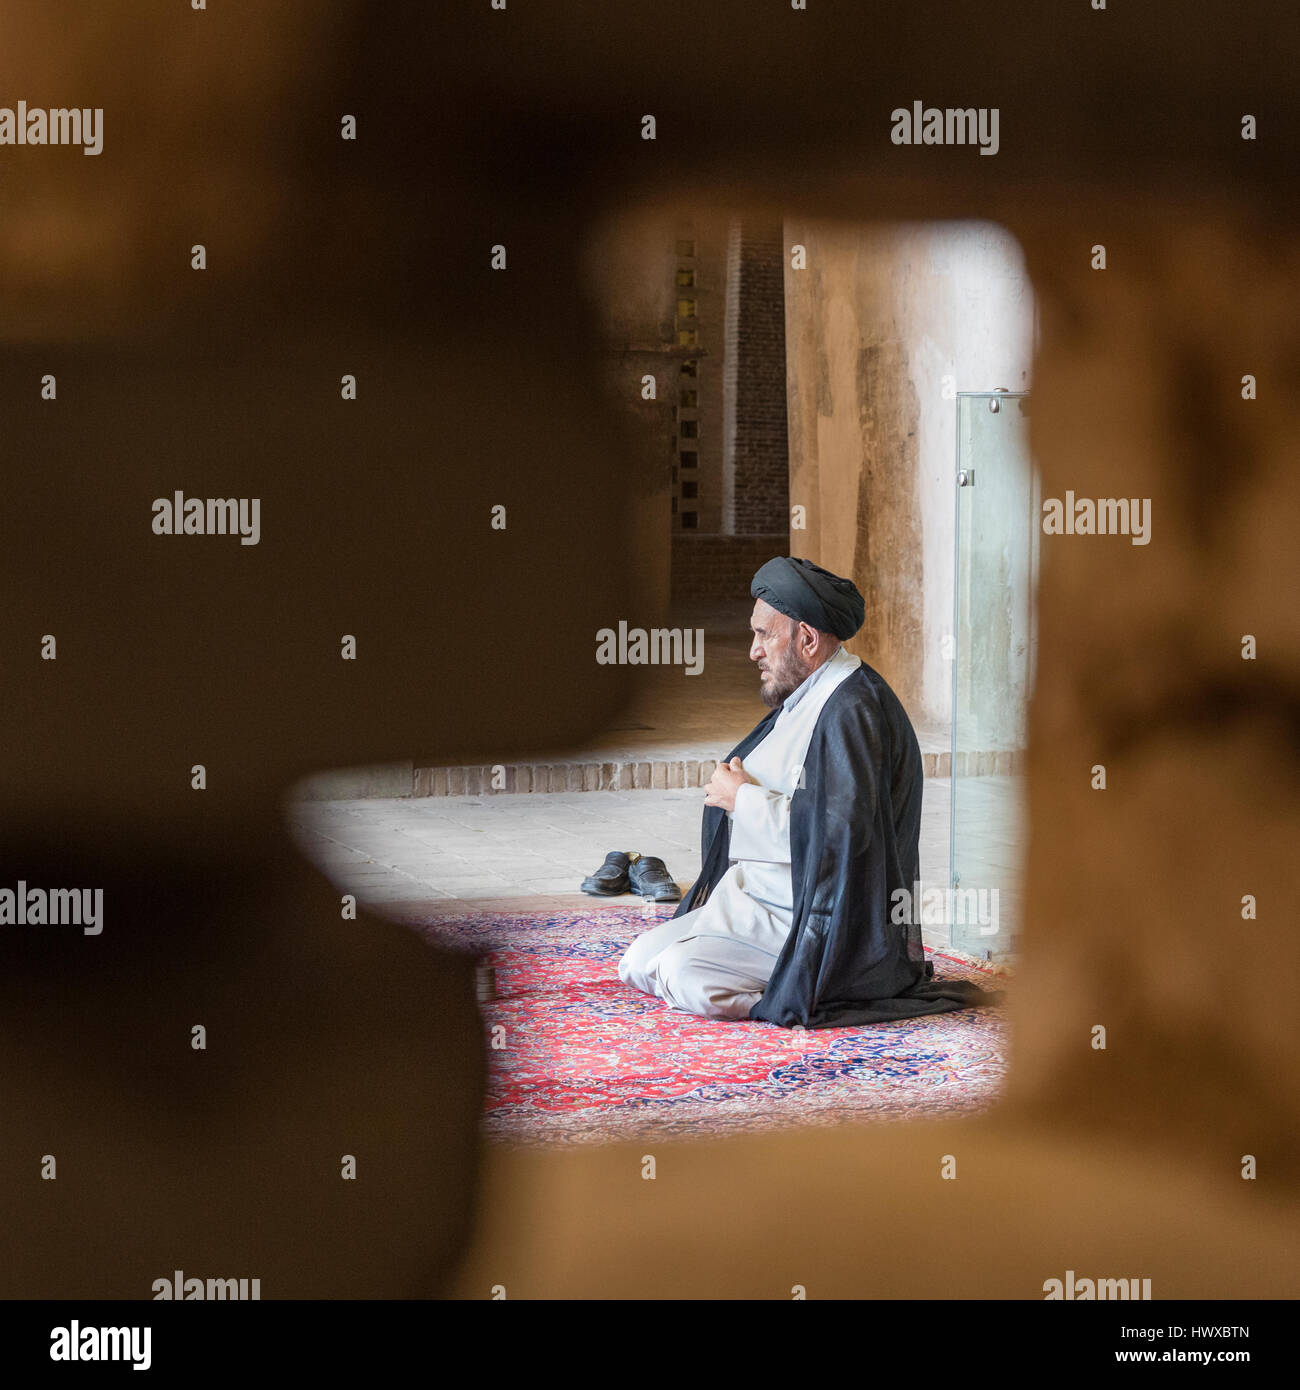 Assis en priant le mollah encadrée dans la brique, mur de dépistage (vendredi) Mosquée Jameh, Isfahan, Iran Banque D'Images